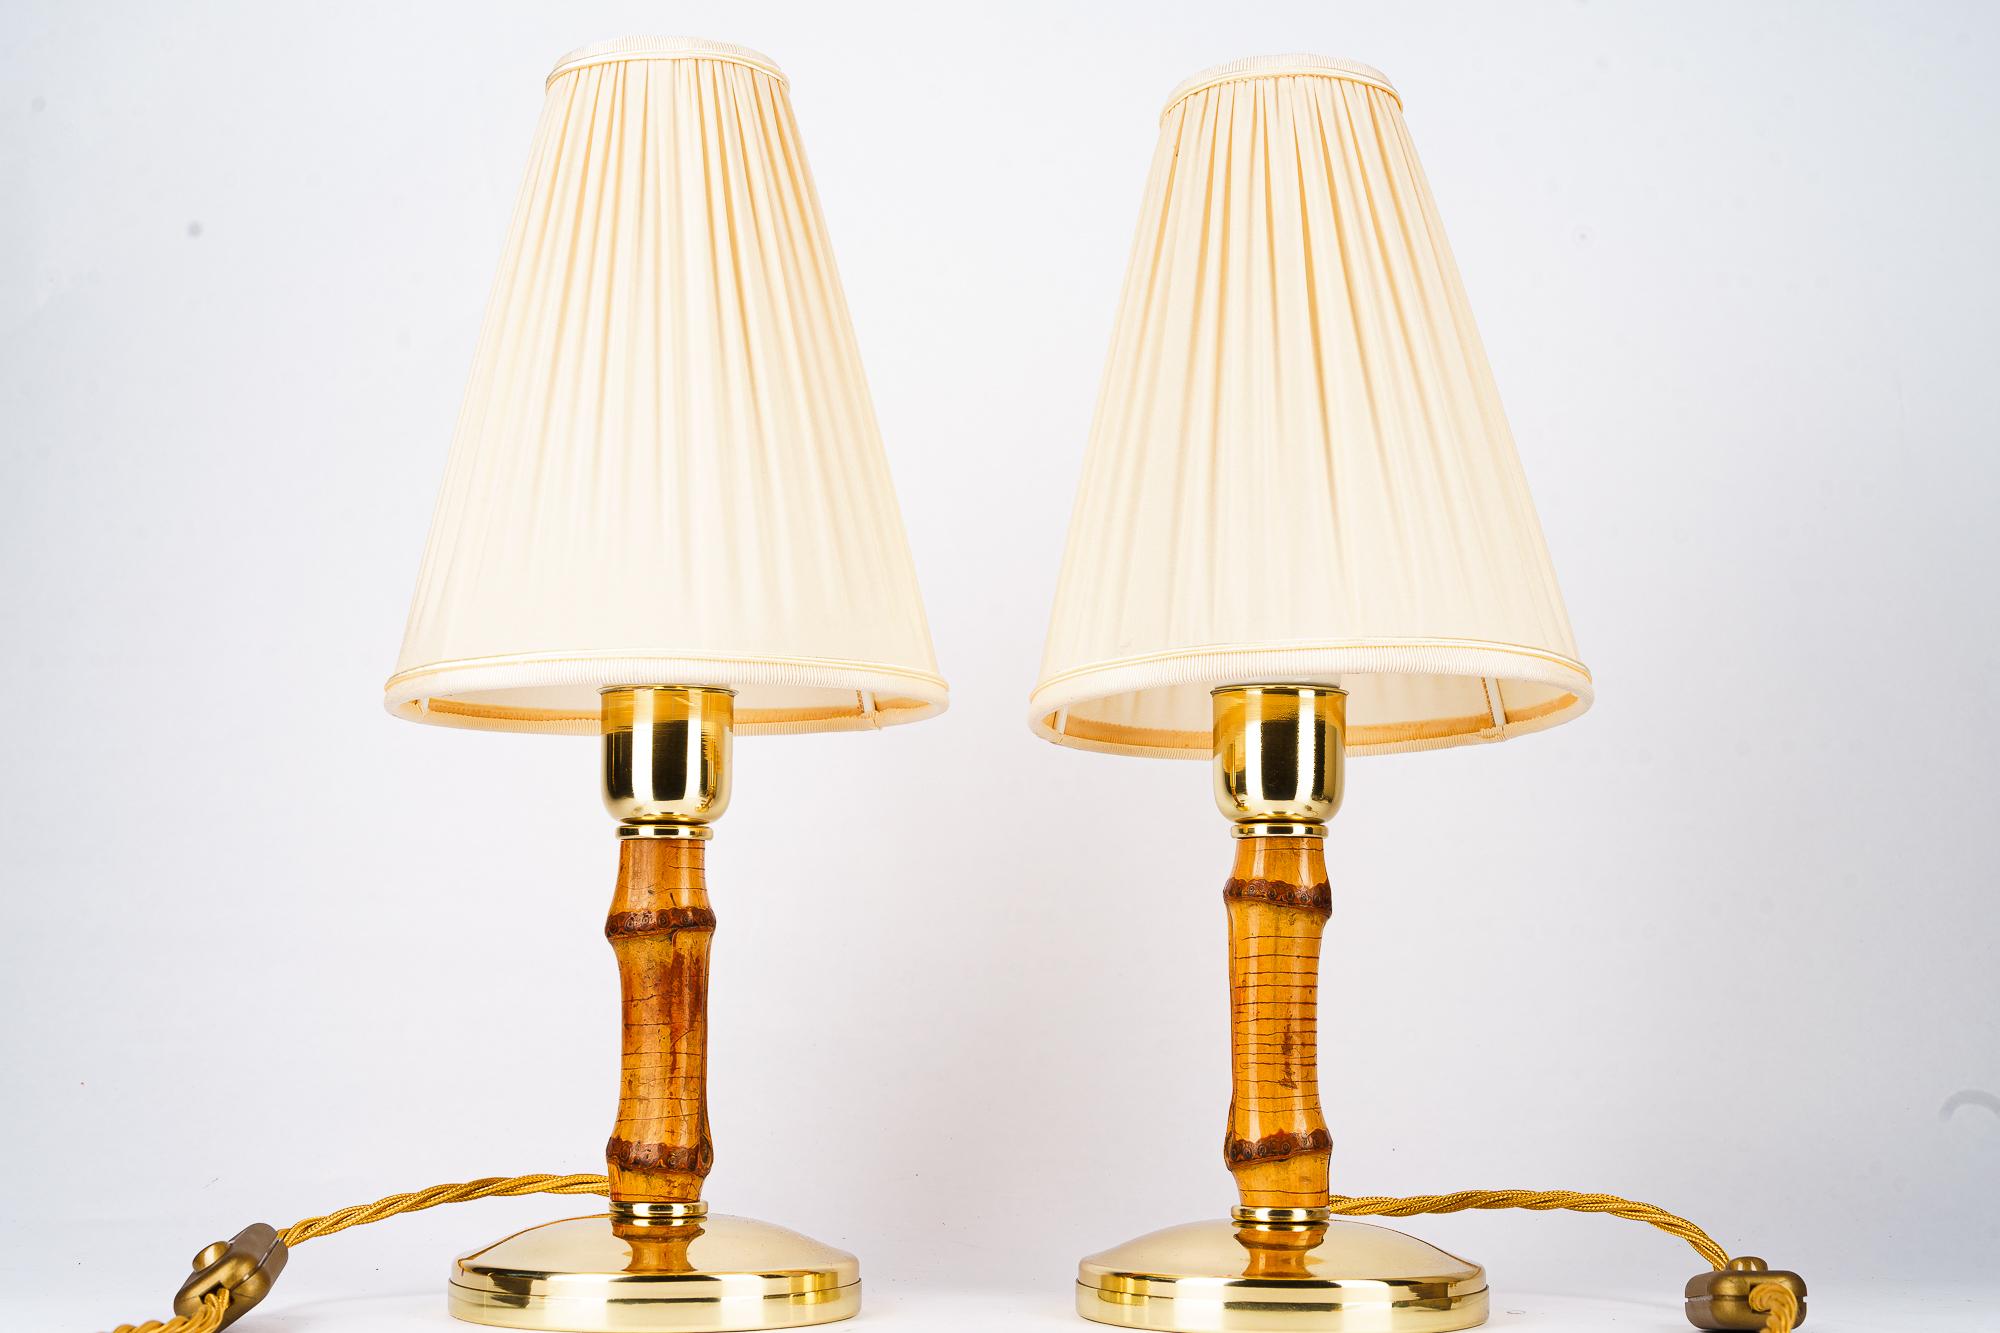 2 Rupert Nikoll Bambus-Tischlampen mit Stoffschirmen Österreich um 1950
Messing poliert und emailliert
Die Stoffschirme werden ersetzt ( neu )
Preis des Paares.